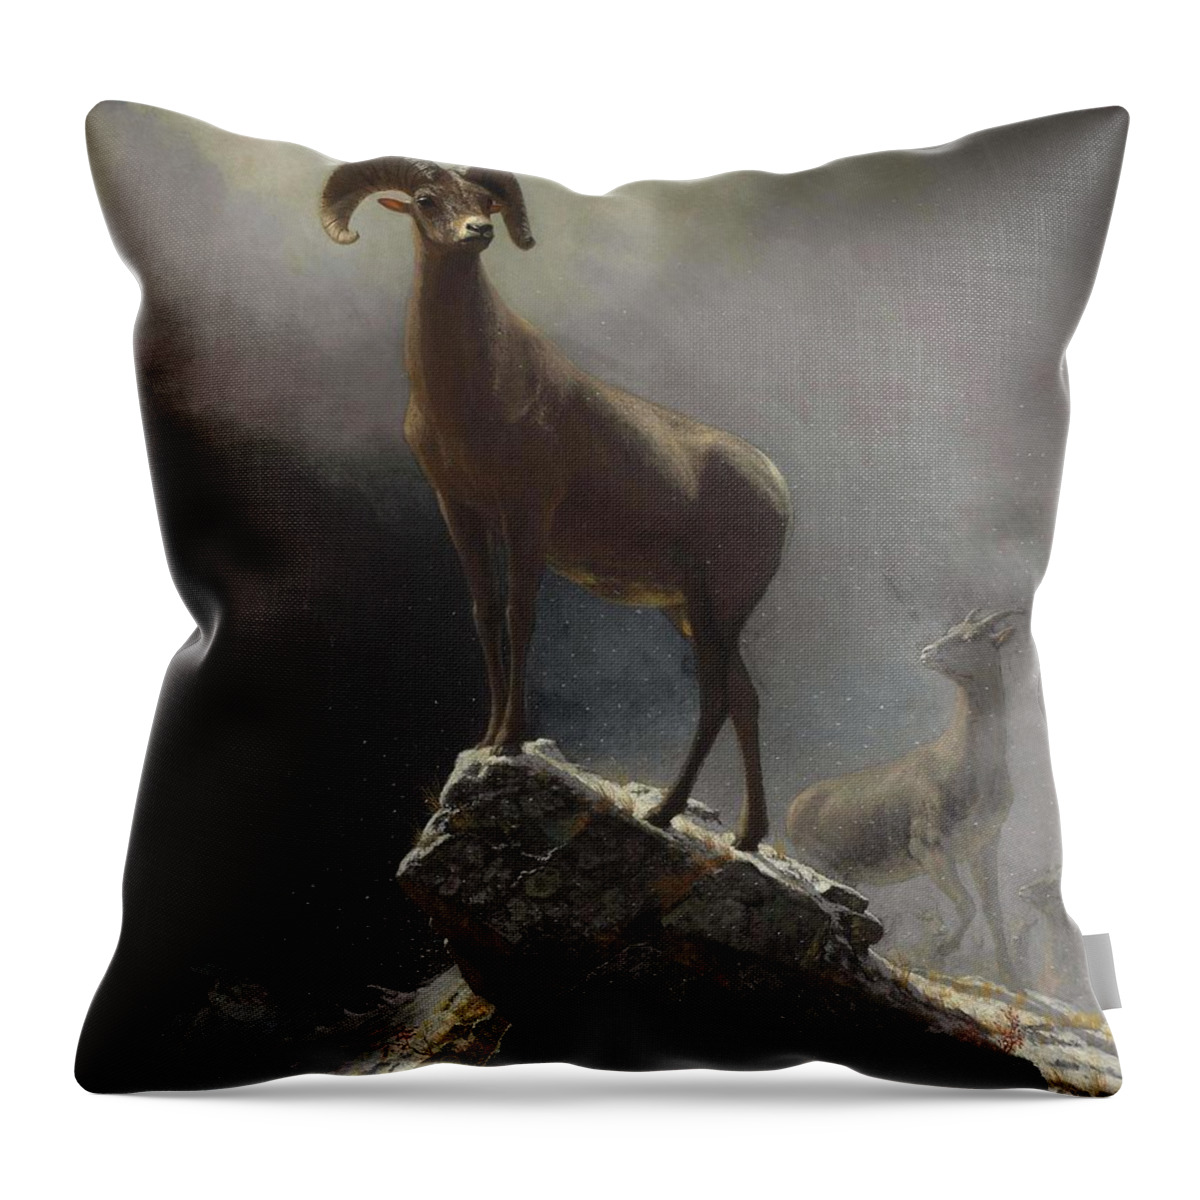 Sheep Throw Pillow featuring the painting Albert_Bierstadt_-_Rocky_Mountain_Sheep_or_Big_Horn,_Ovis,_Montana by Albert Bierstadt